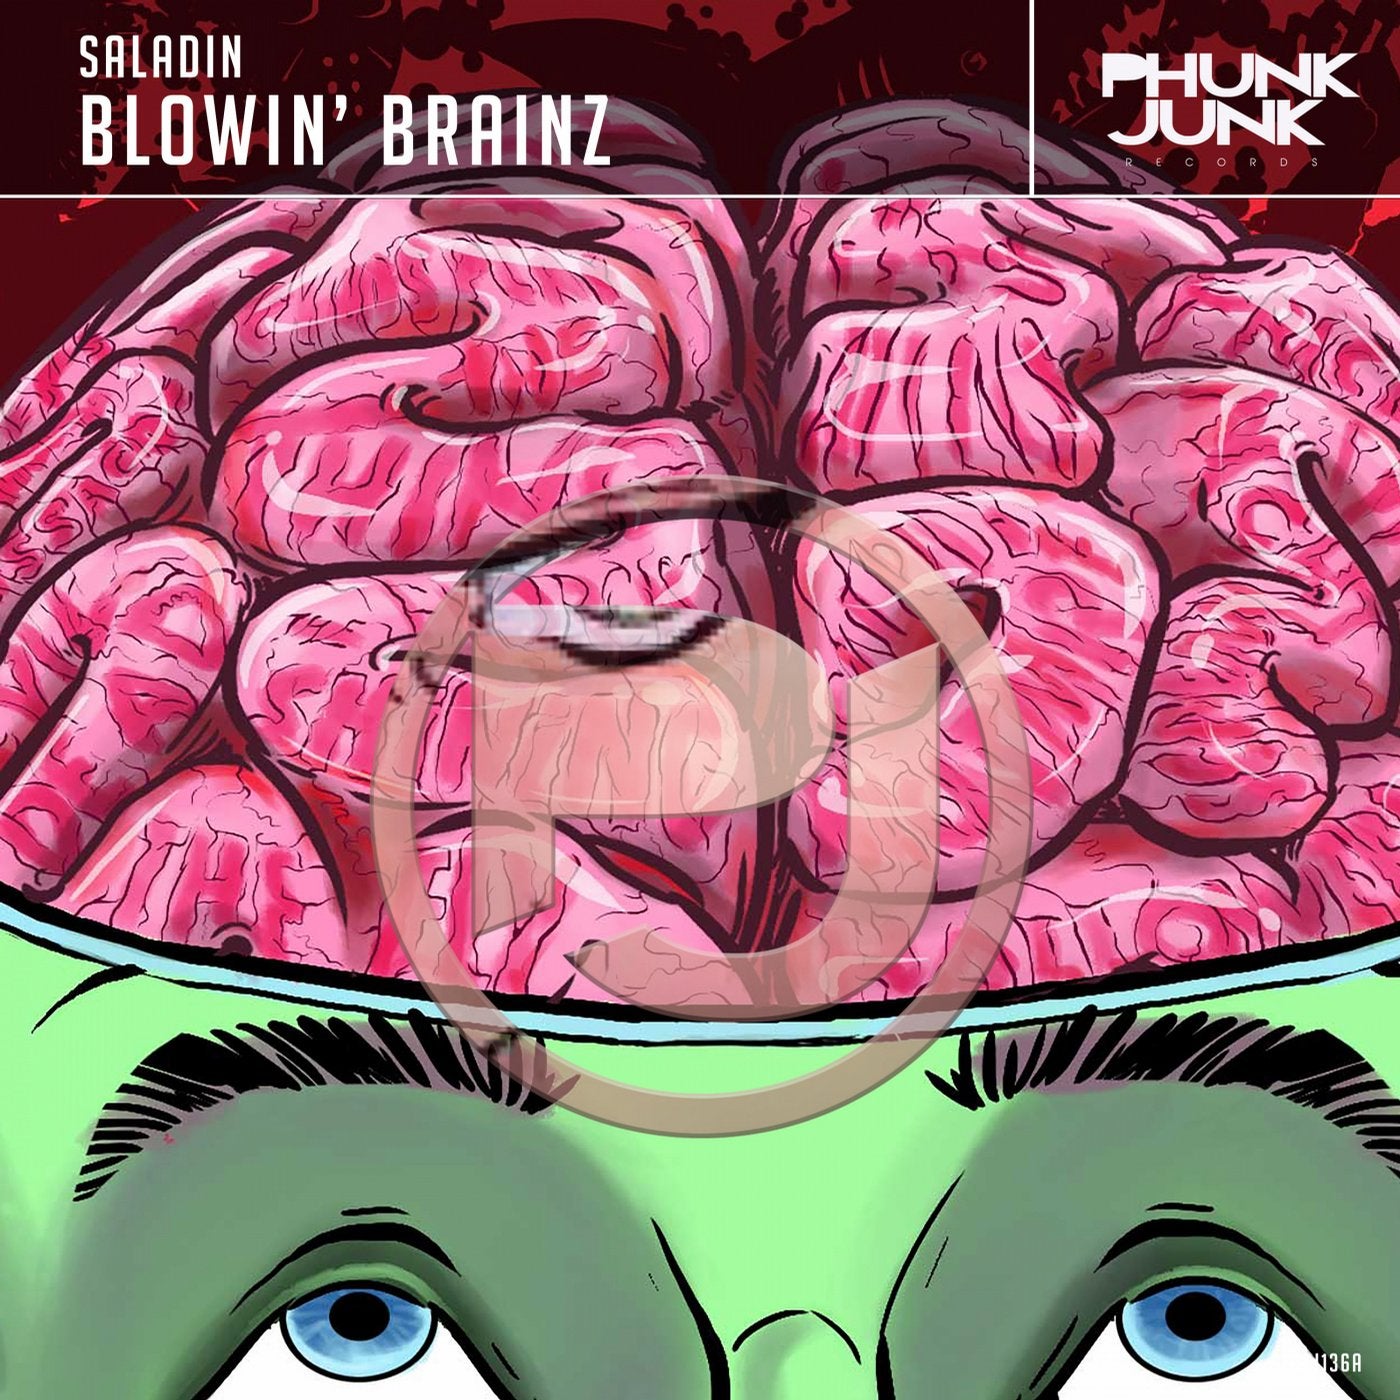 Blowin' Brainz